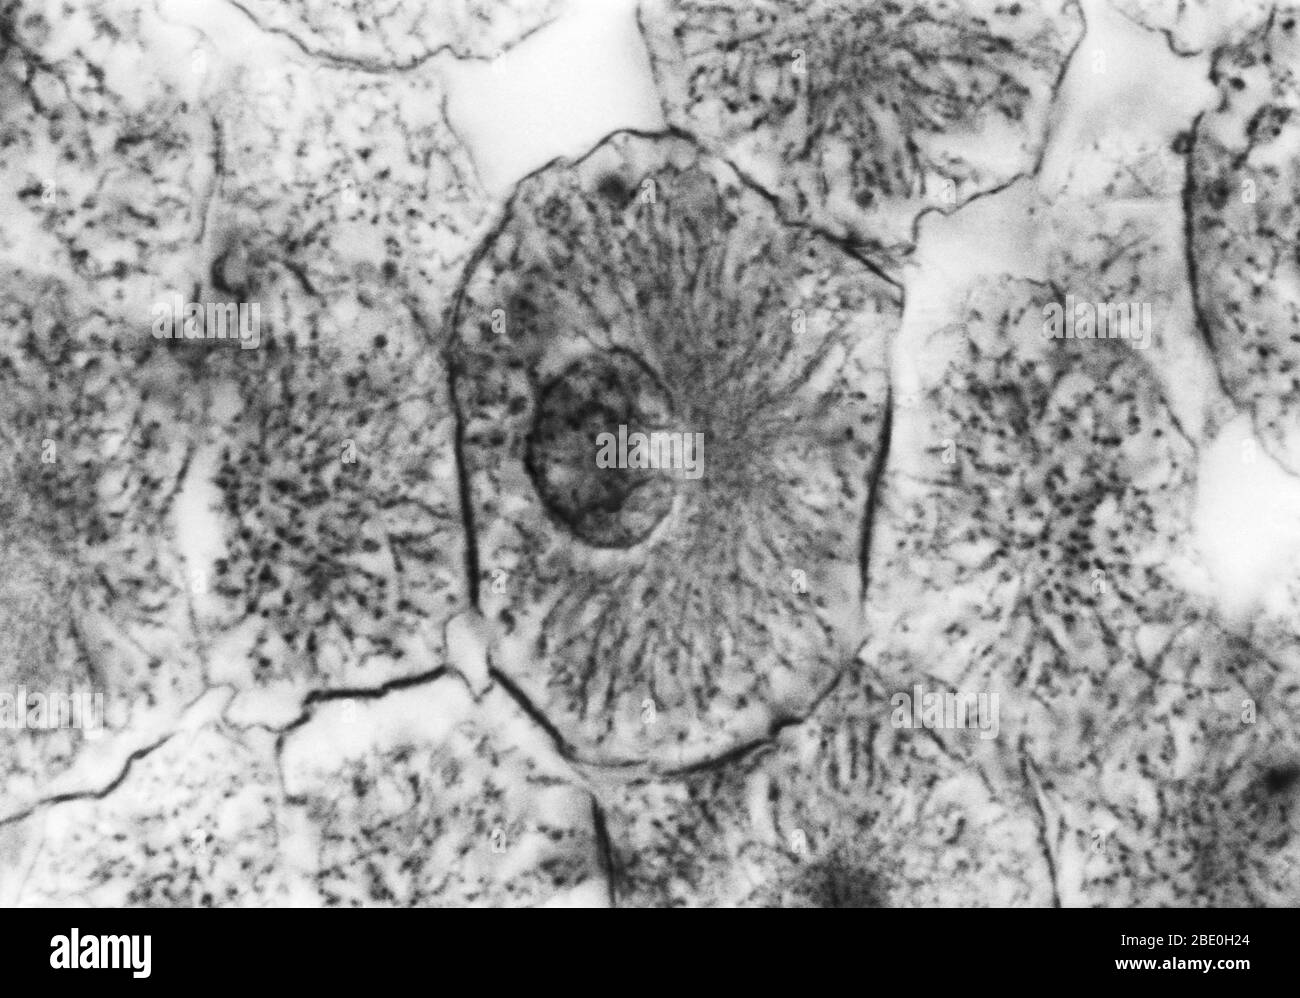 Micrographe léger montrant la mitose dans la blastula de grand corégone, prophase. Aucun agrandissement donné. Mitose, la méthode habituelle de division cellulaire, caractérisée typiquement par la résolution de la chromatine du noyau en une forme de thrélike, qui se condense en chromosomes, chacun d'eux se sépare longitudinalement en deux parties, une partie de chaque chromosome étant retenue dans chacune des deux nouvelles cellules résultant de la cellule d'origine. Les quatre principales phases de la mitose sont la prophase, la métaphase, l'anaphase et la télophase. Blastula, un embryon animal à l'étape immédiatement après la division de l'oeuf fécondé Banque D'Images